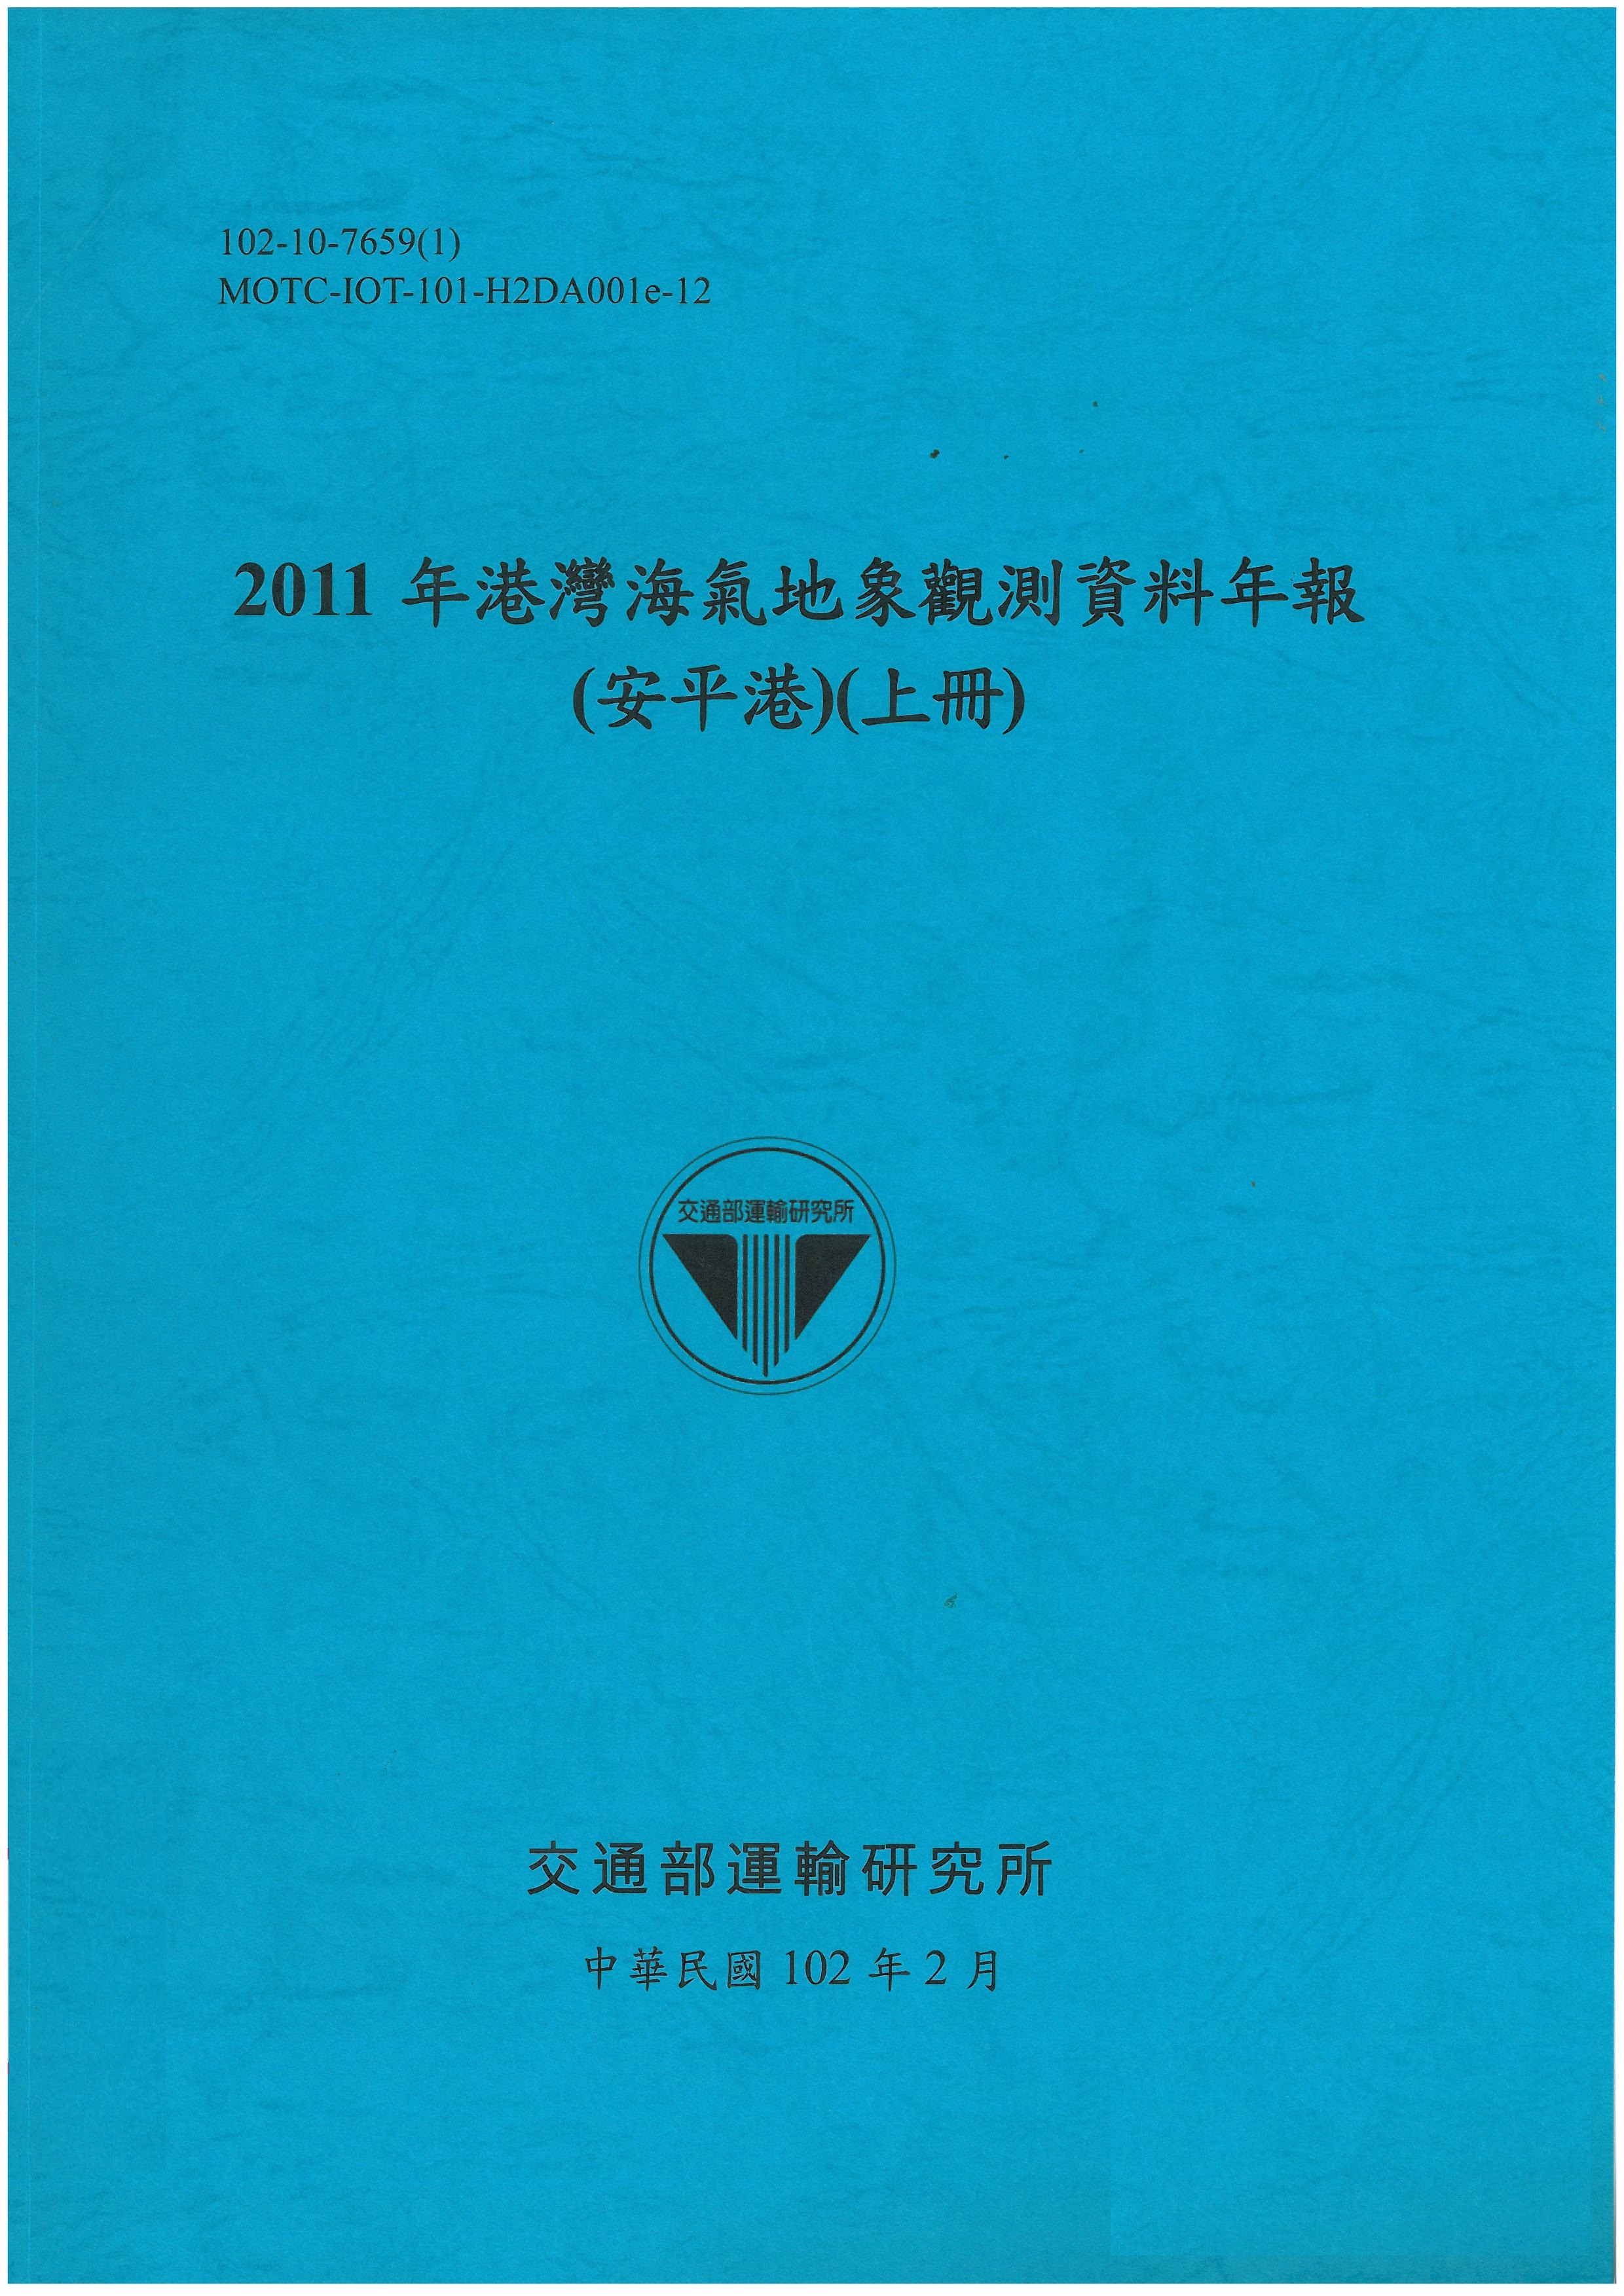 2011年港灣海氣地象觀測資料年報(安平港)(上冊)